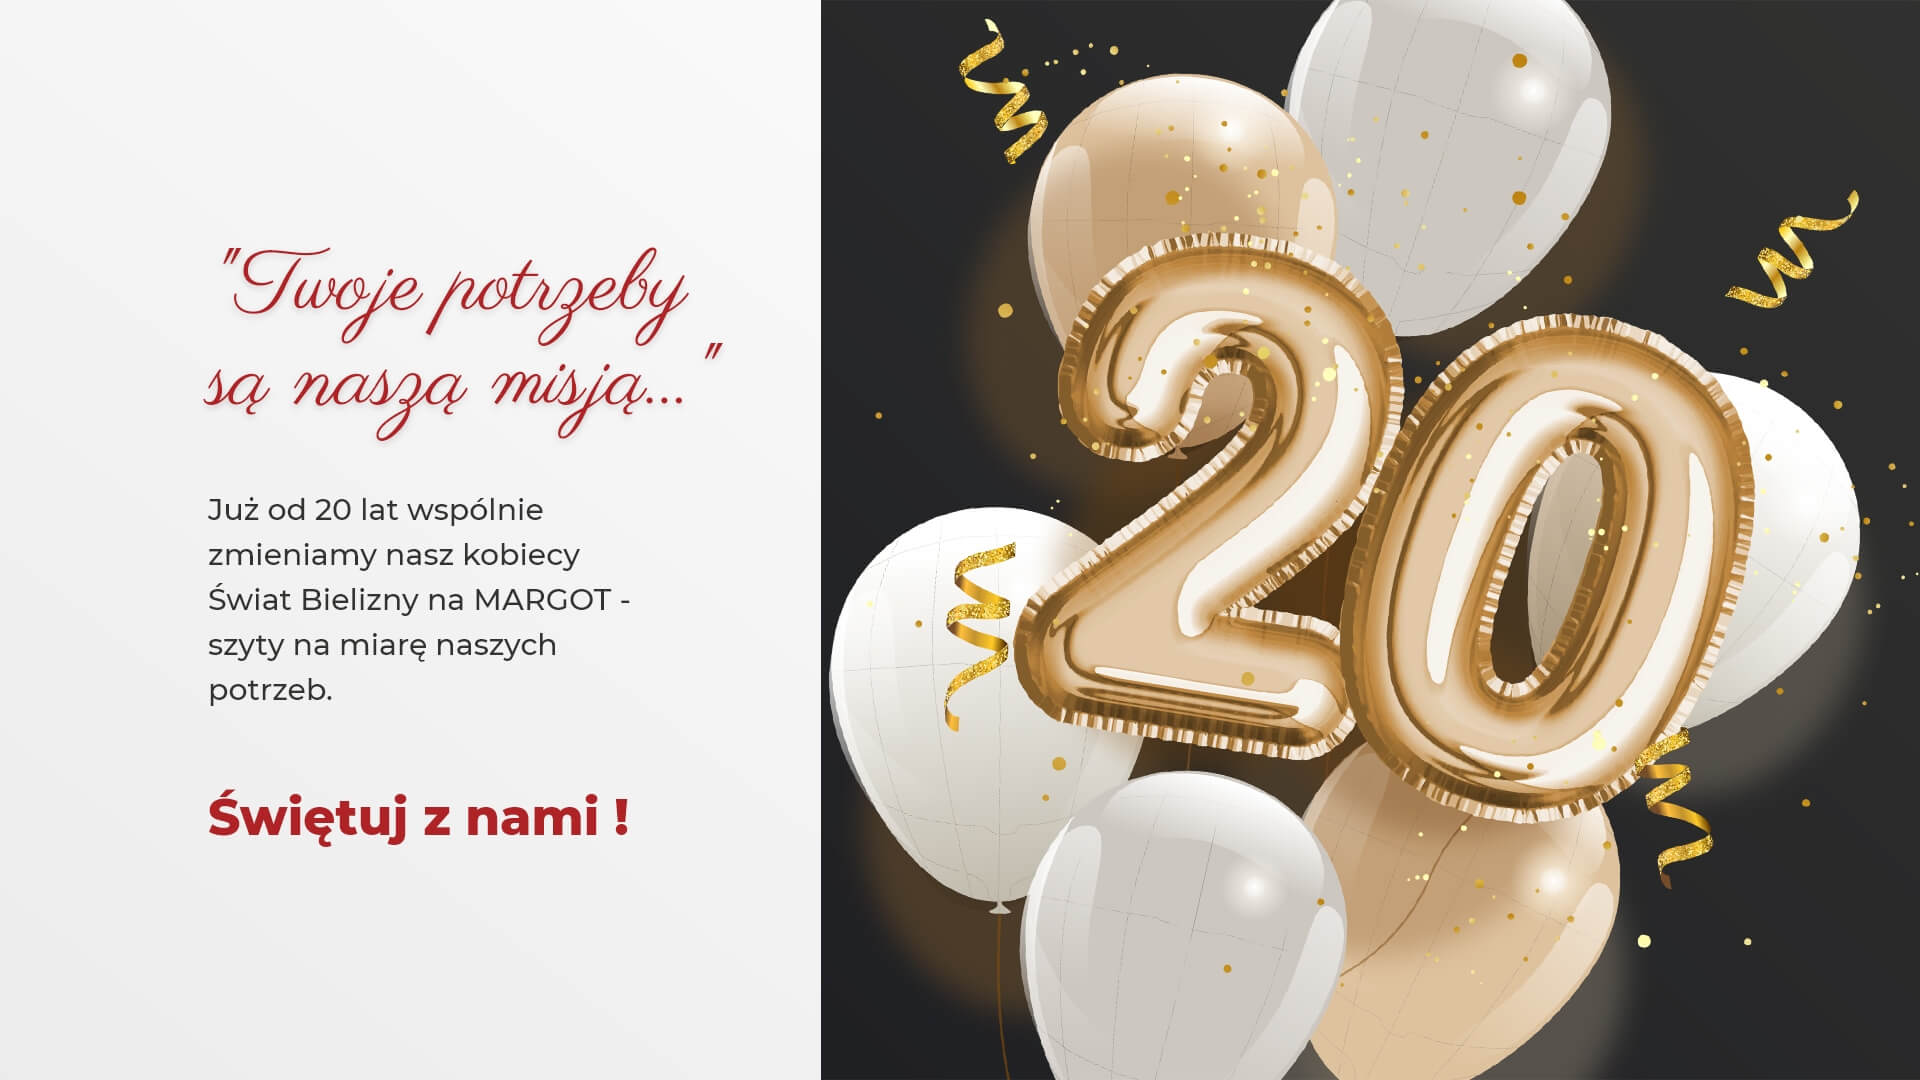 Urodziny Margot - balon w kształcie liczby 20. Twoje potrzeby są naszą misją ... Już od 20 lat wspólnie zmieniamy nasz kobiecy Świat Bielizny na MARGOT - szyty na miarę naszych potrzeb. Świętuj z nami!